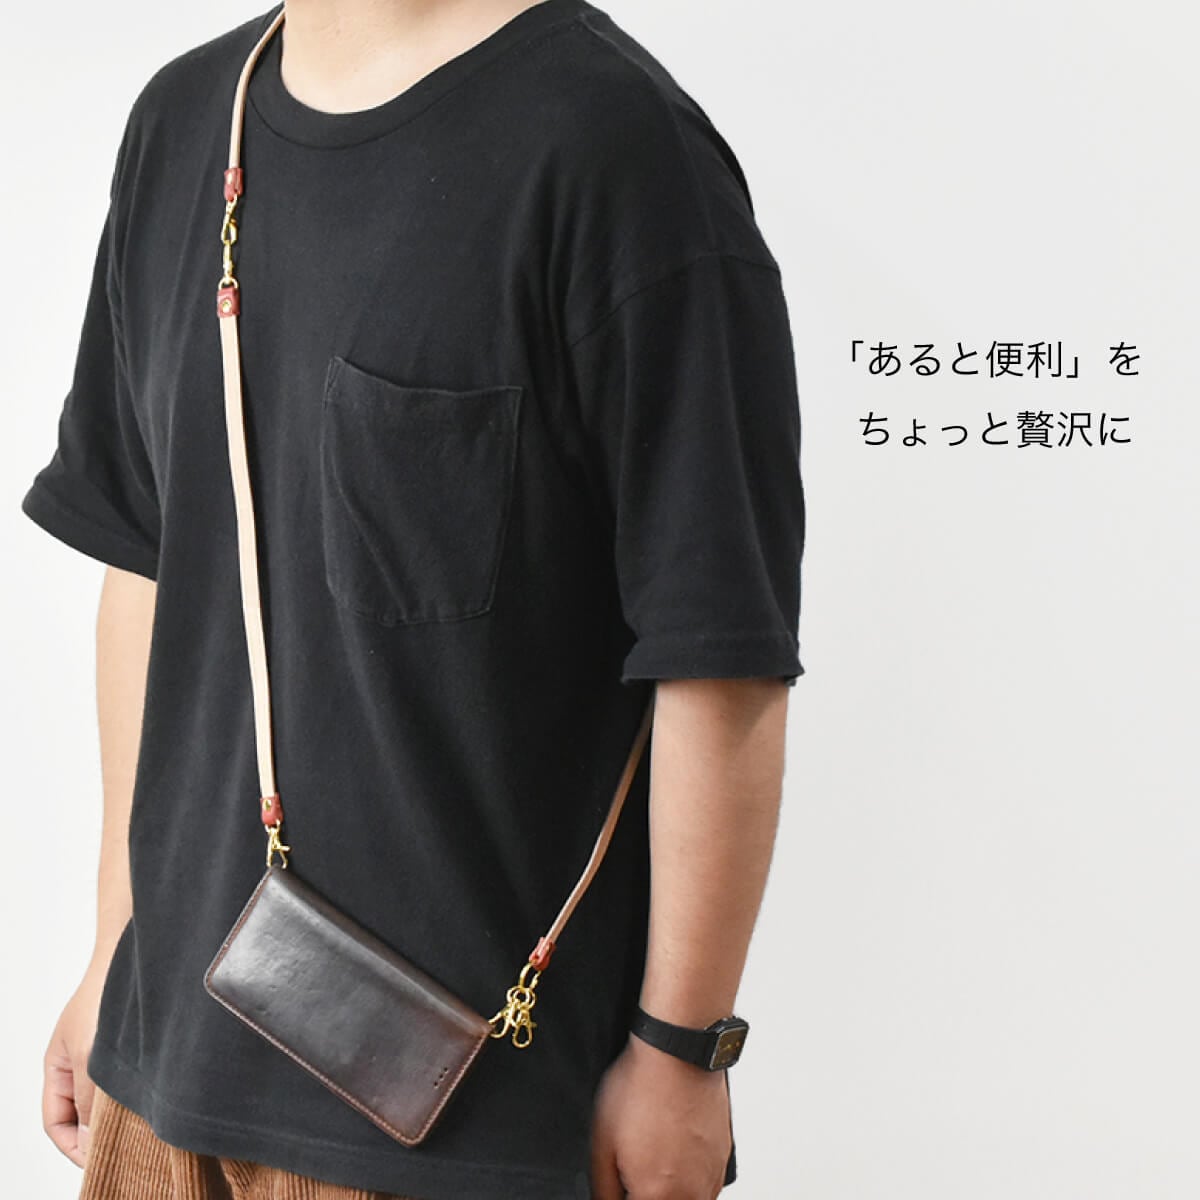 Tochigi Leather Shoulder Strap Long Length